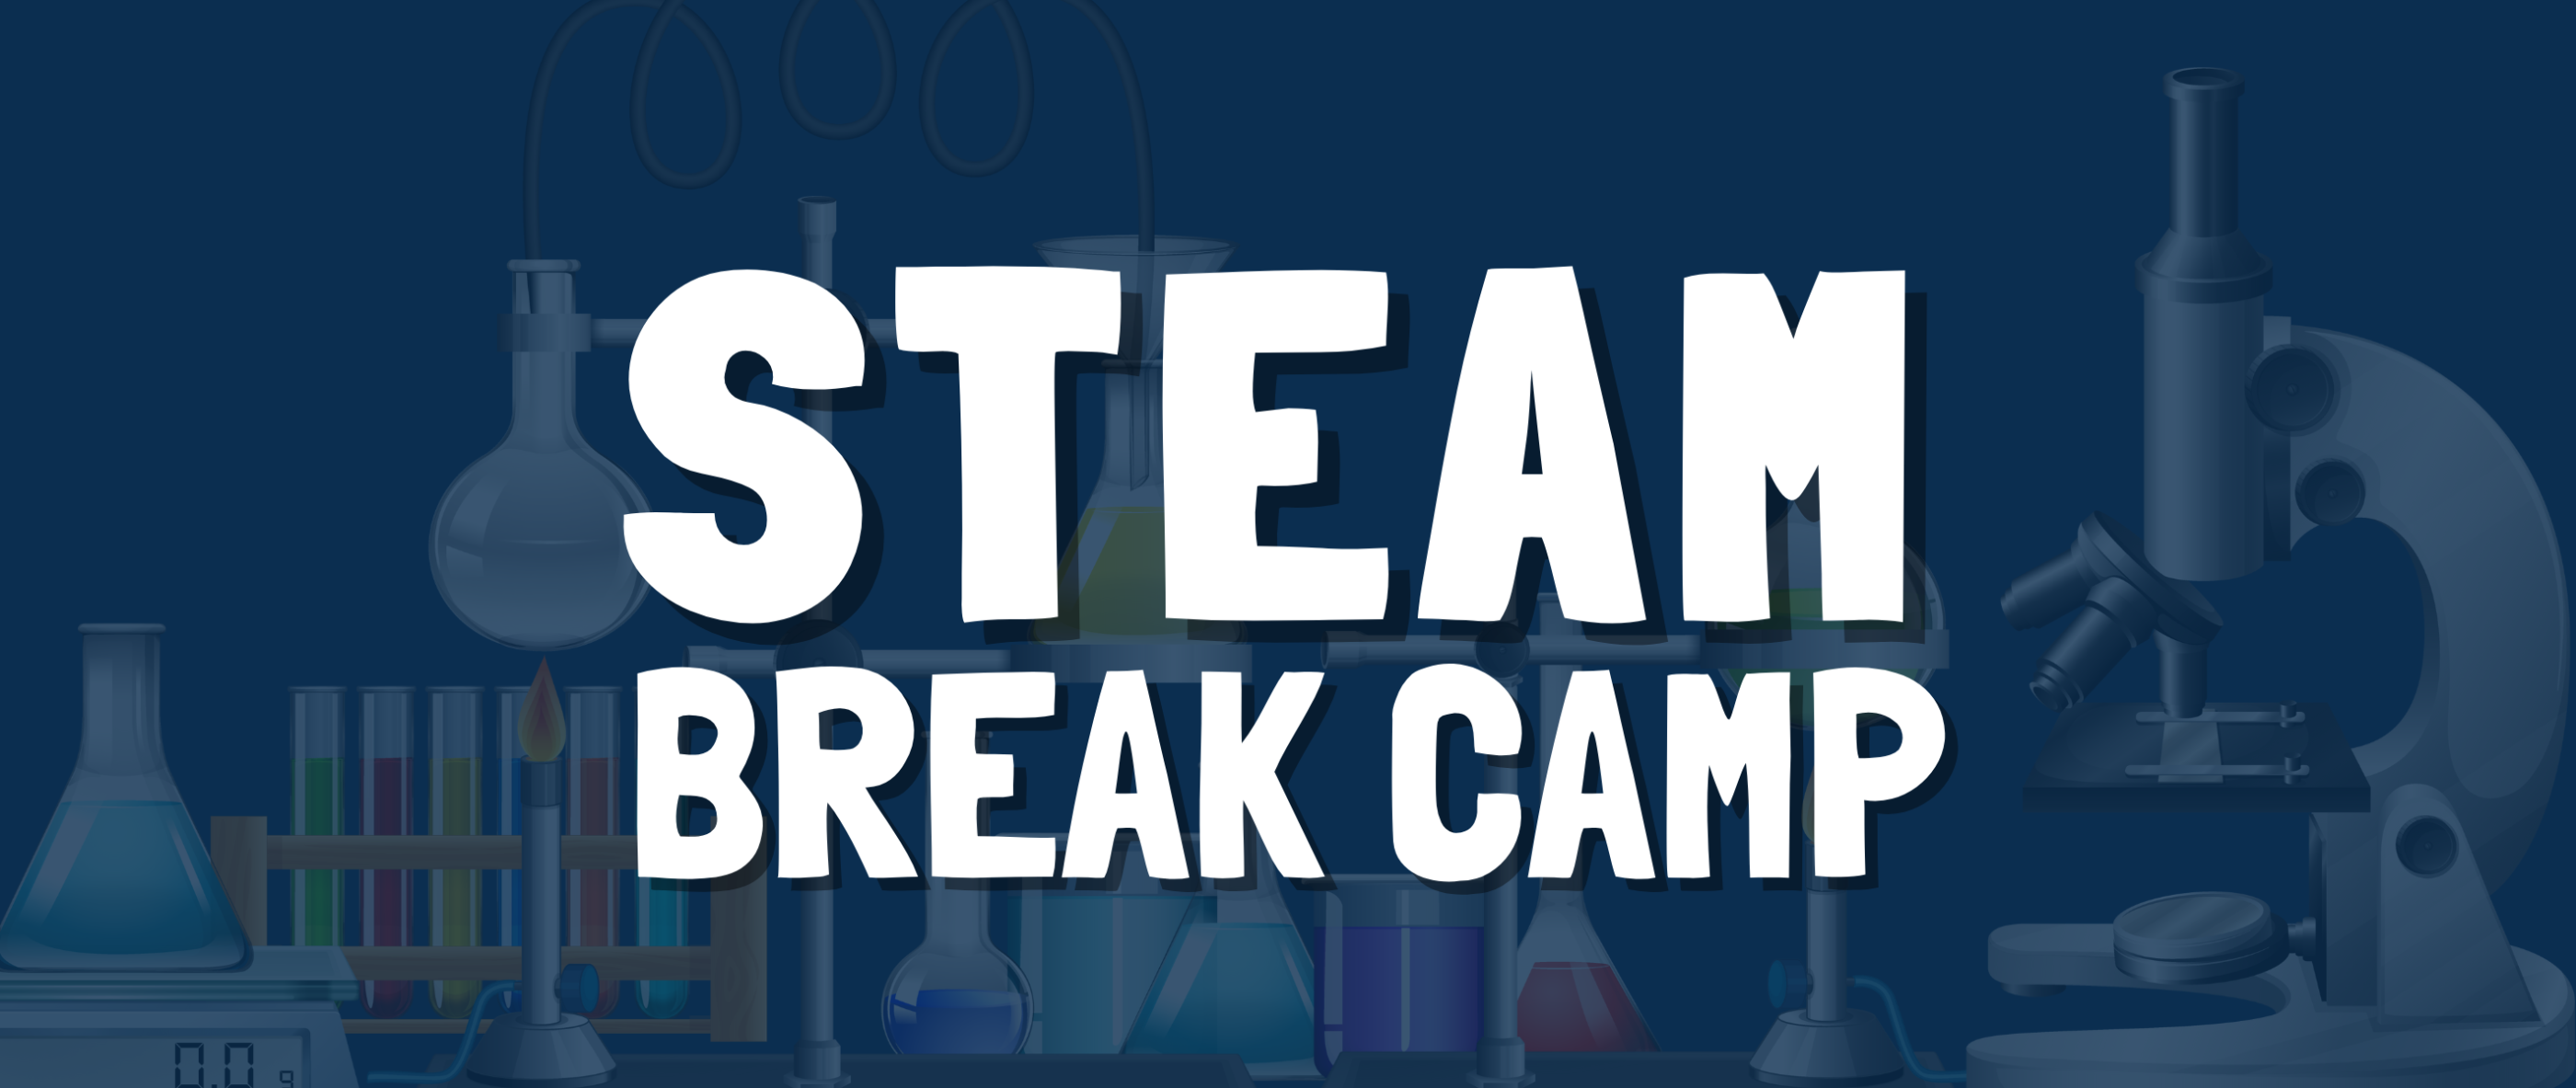 STEAM Break Camp